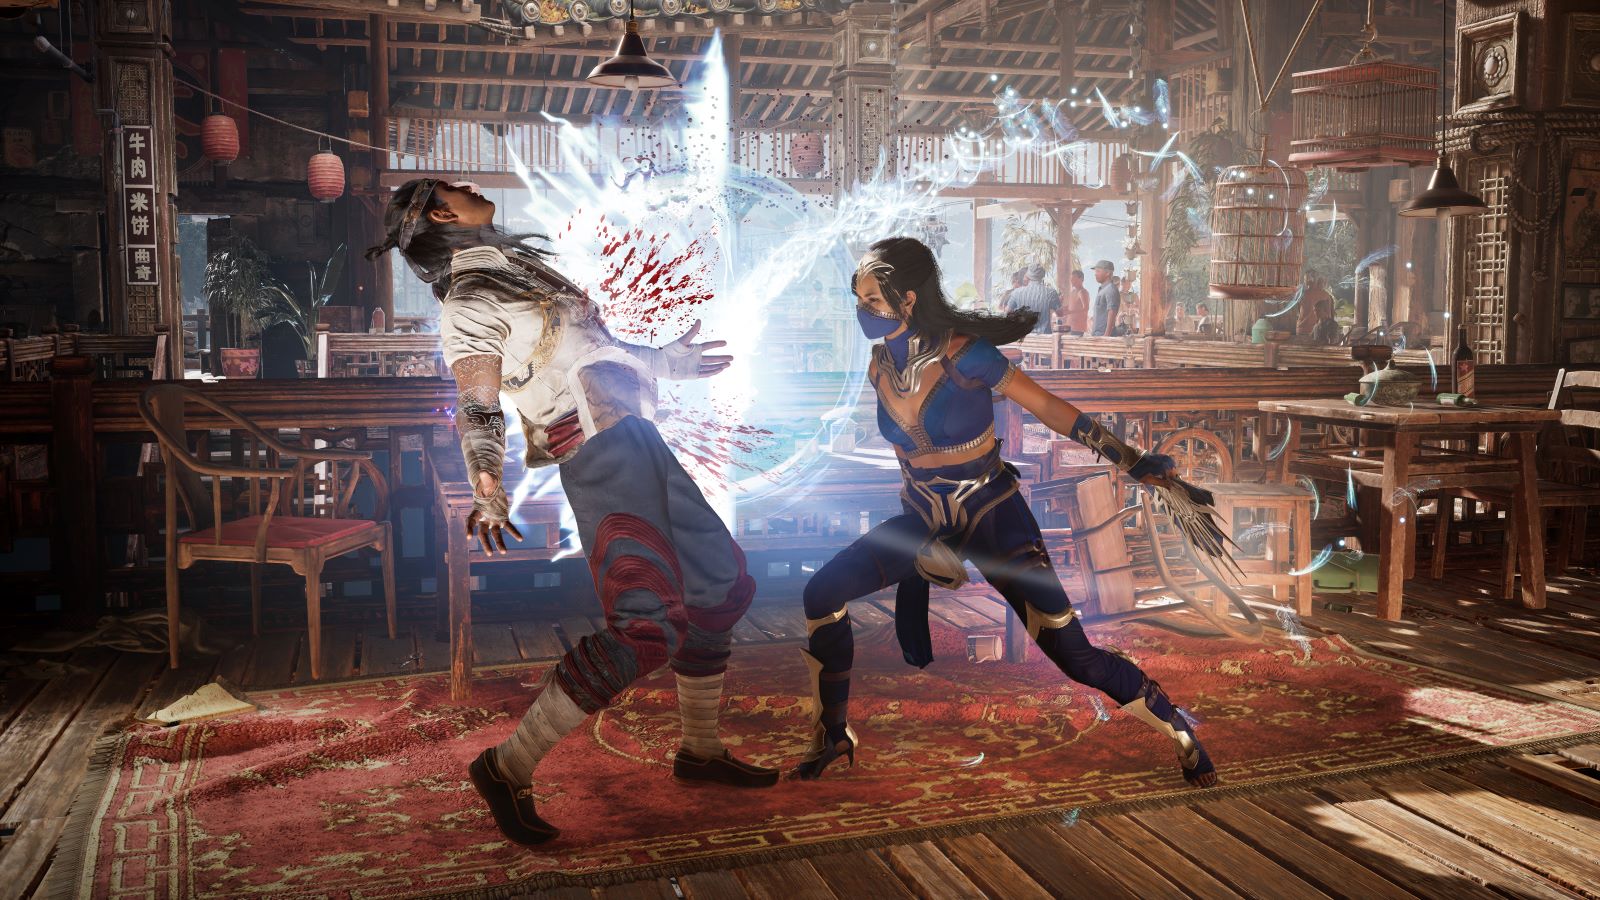 La campagne narrative de Mortal Kombat 1 durera approximativement la même durée que celle de MKX et MK11.